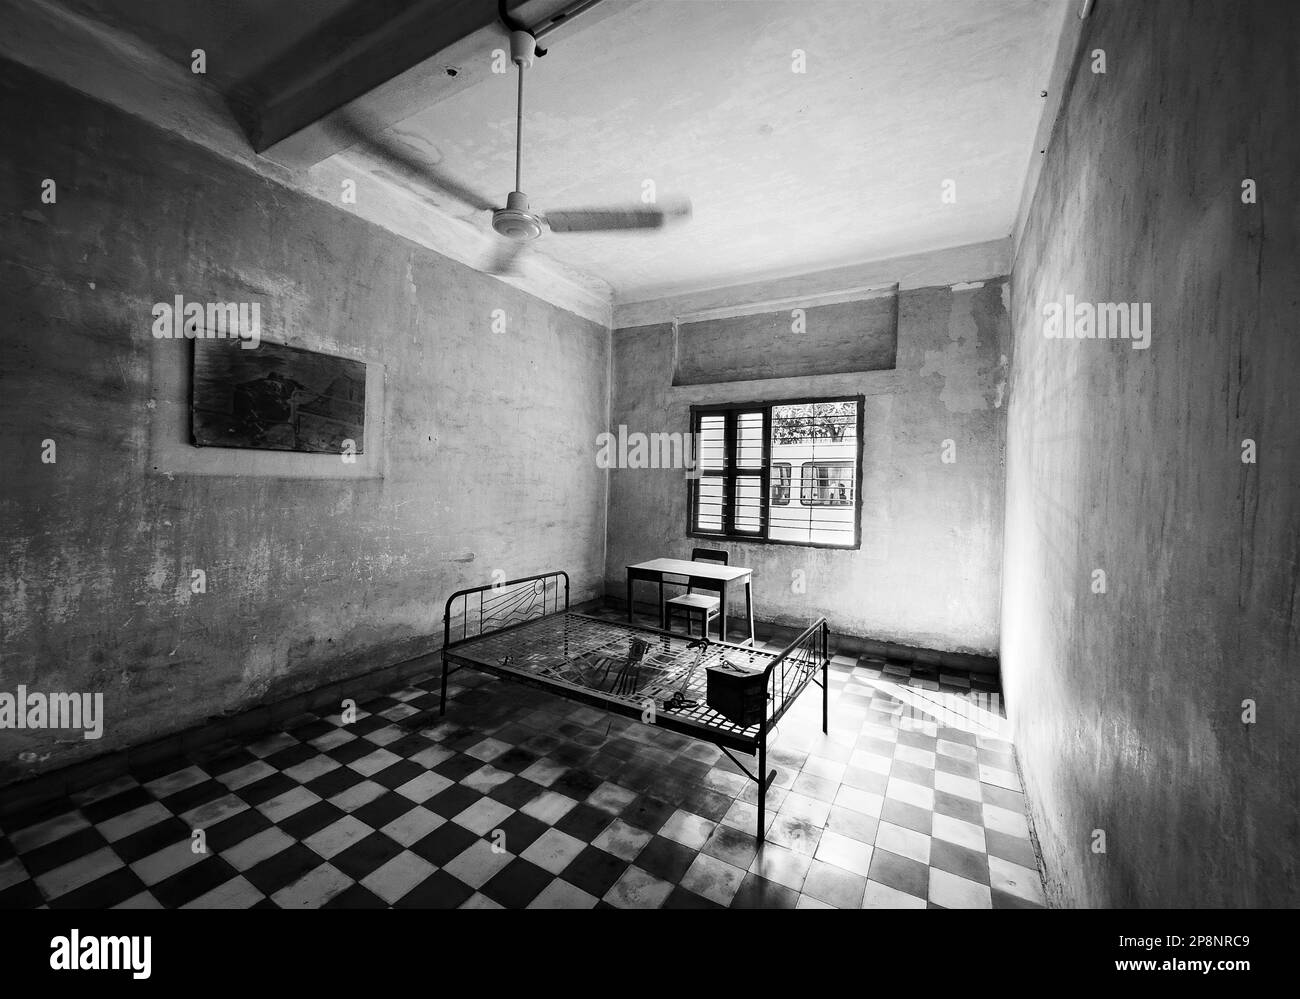 Ein Bettgestell aus Stahl in einer Folterzelle, die aus einem ehemaligen Klassenzimmer im Tuol Sleng oder S-21 Folter- und Völkermord-Museum Phnom Penh, Kambodscha, umgebaut wurde Stockfoto